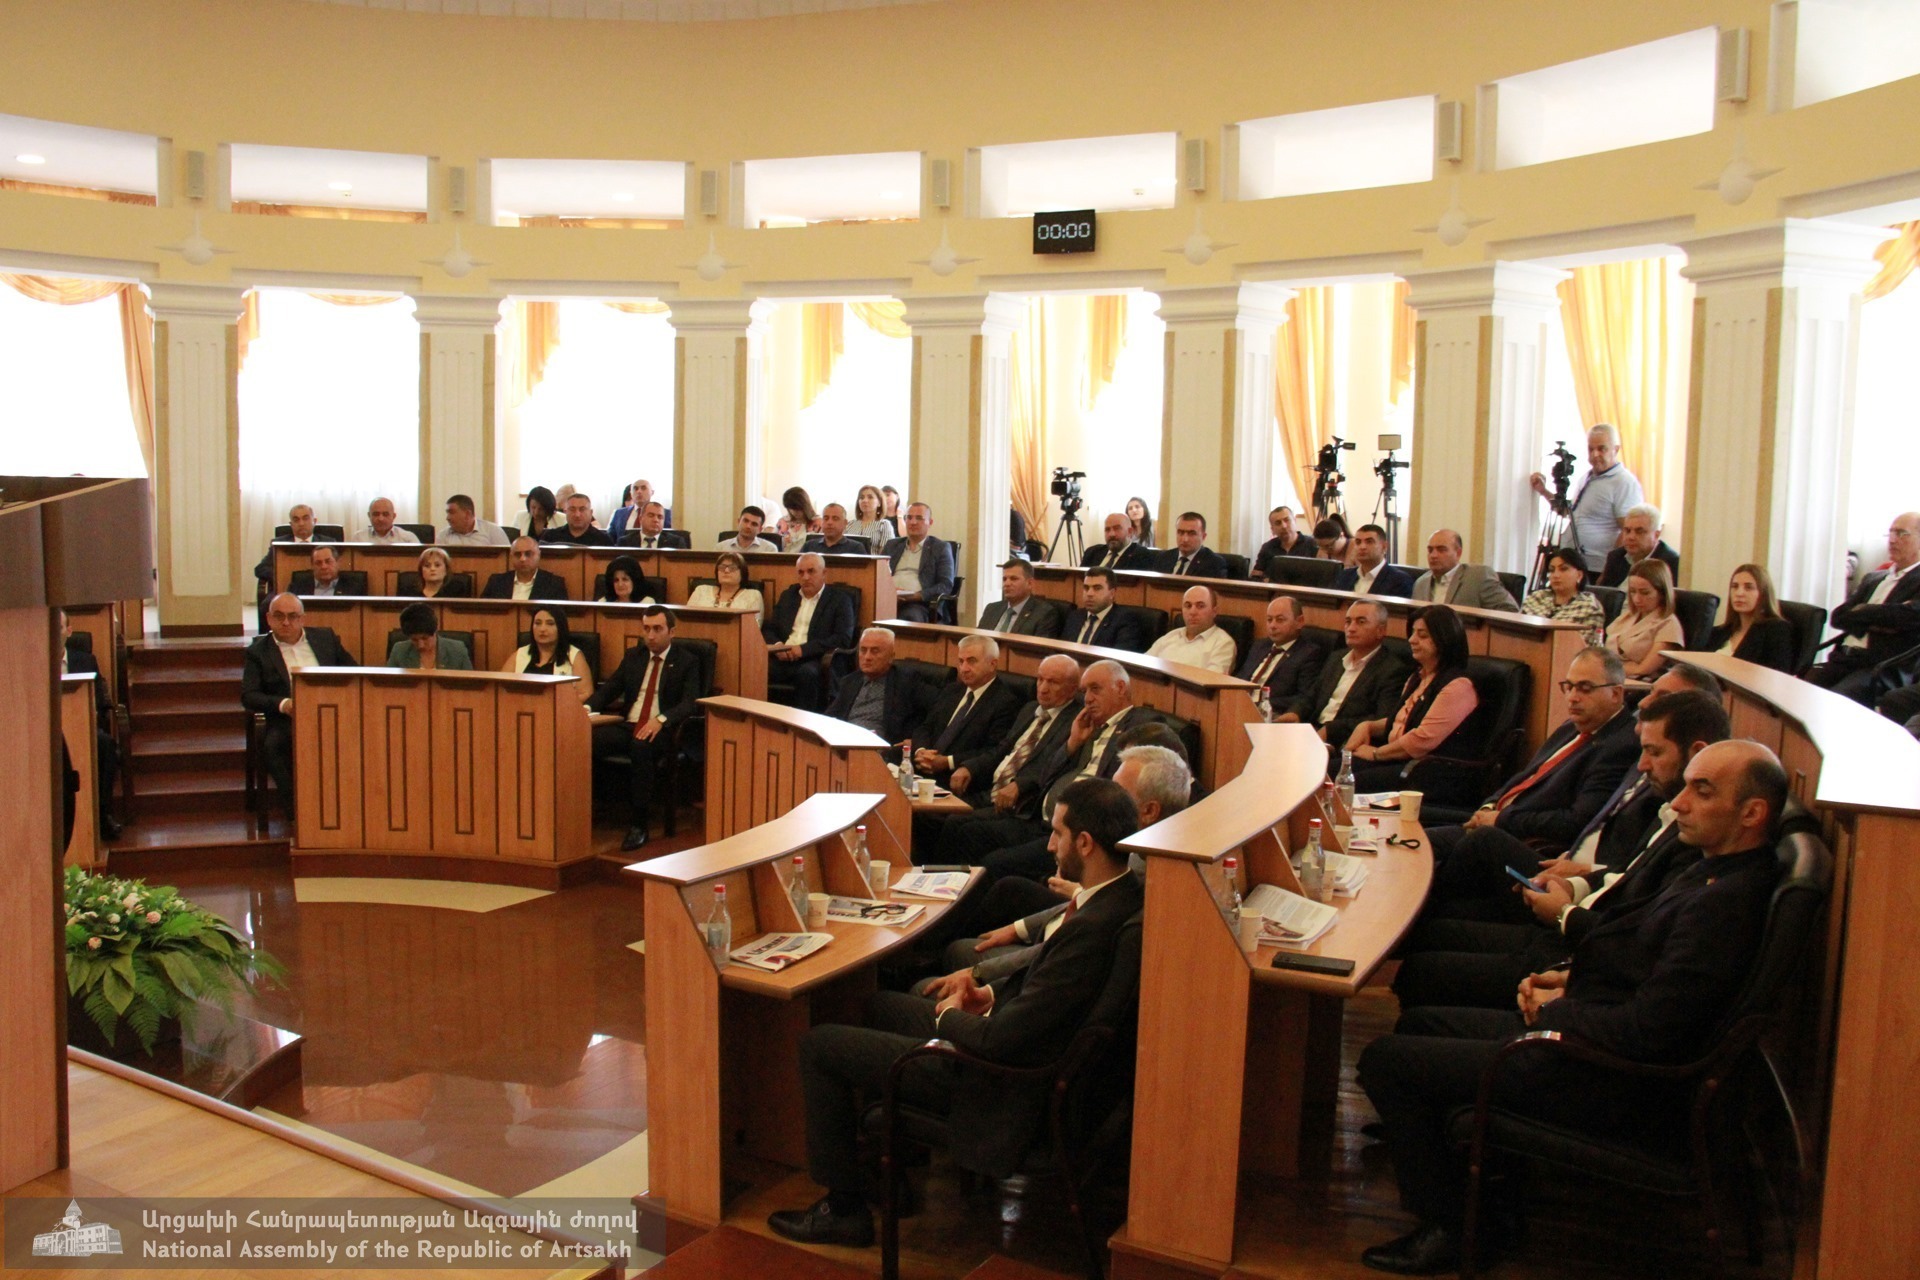 Արցախի ԱԺ հատուկ նիստին մասնակցել է Հայաստանի խորհրդարանի պատվիրակությունը